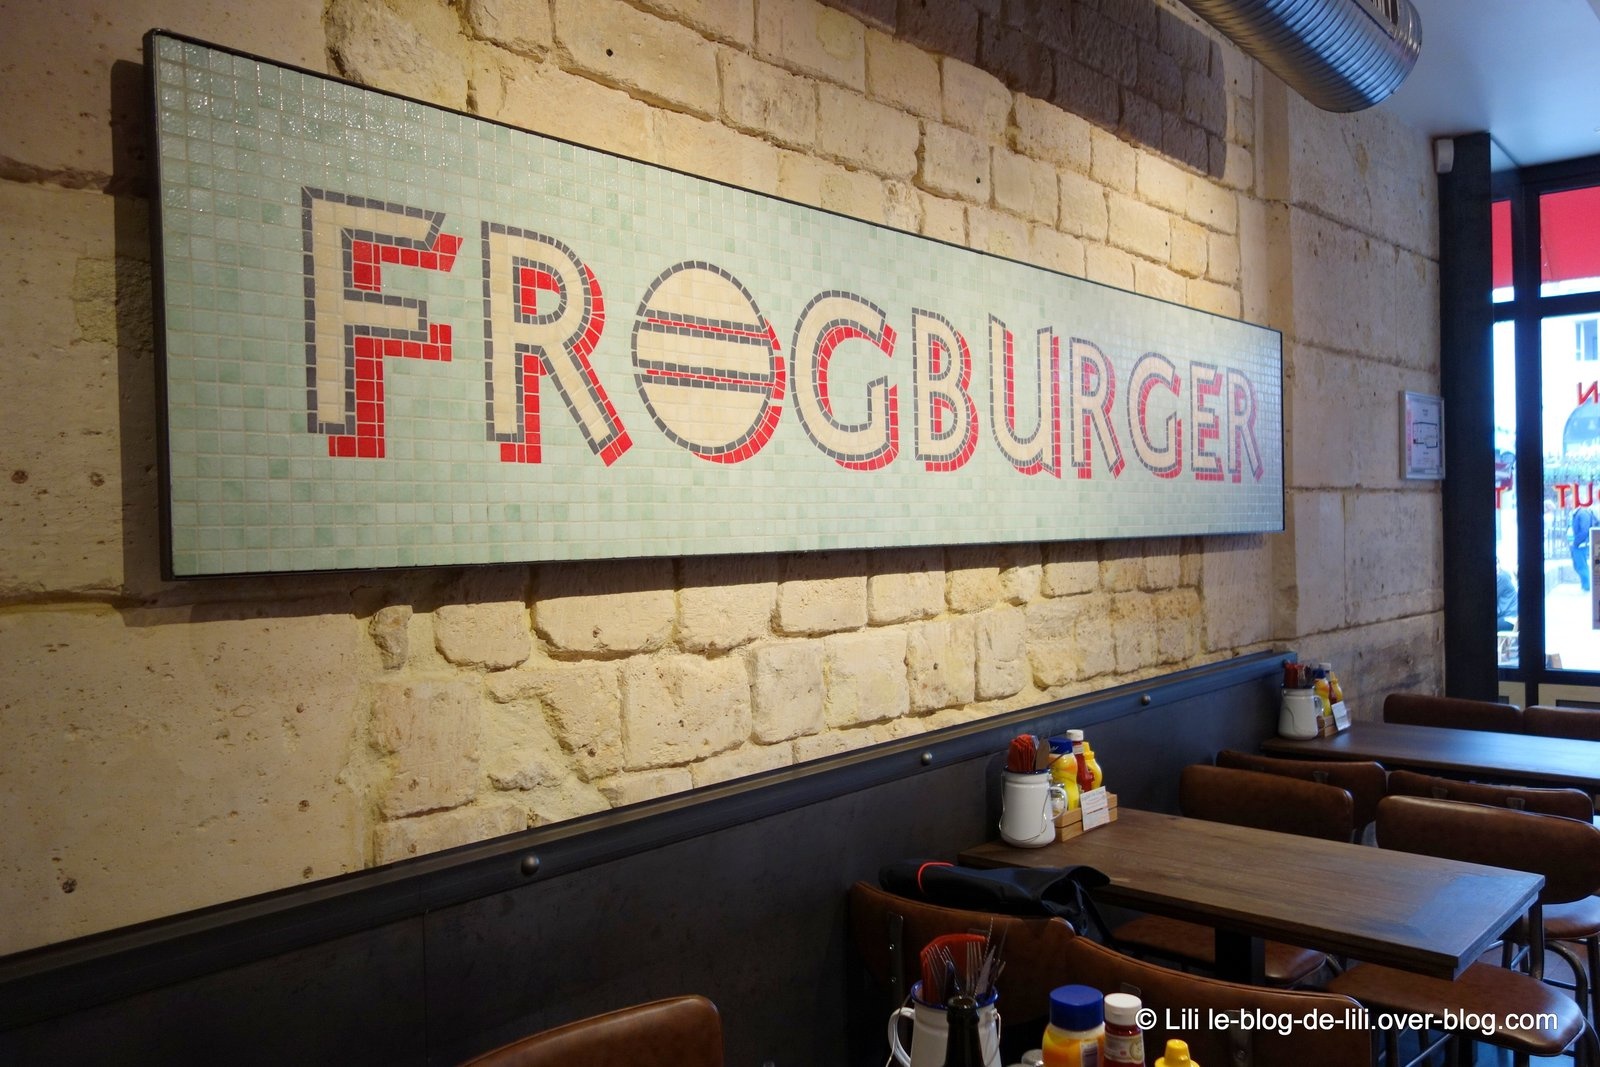 La coupe du monde s'invite chez Frogburger : j'ai testé et approuvé le Rio burger